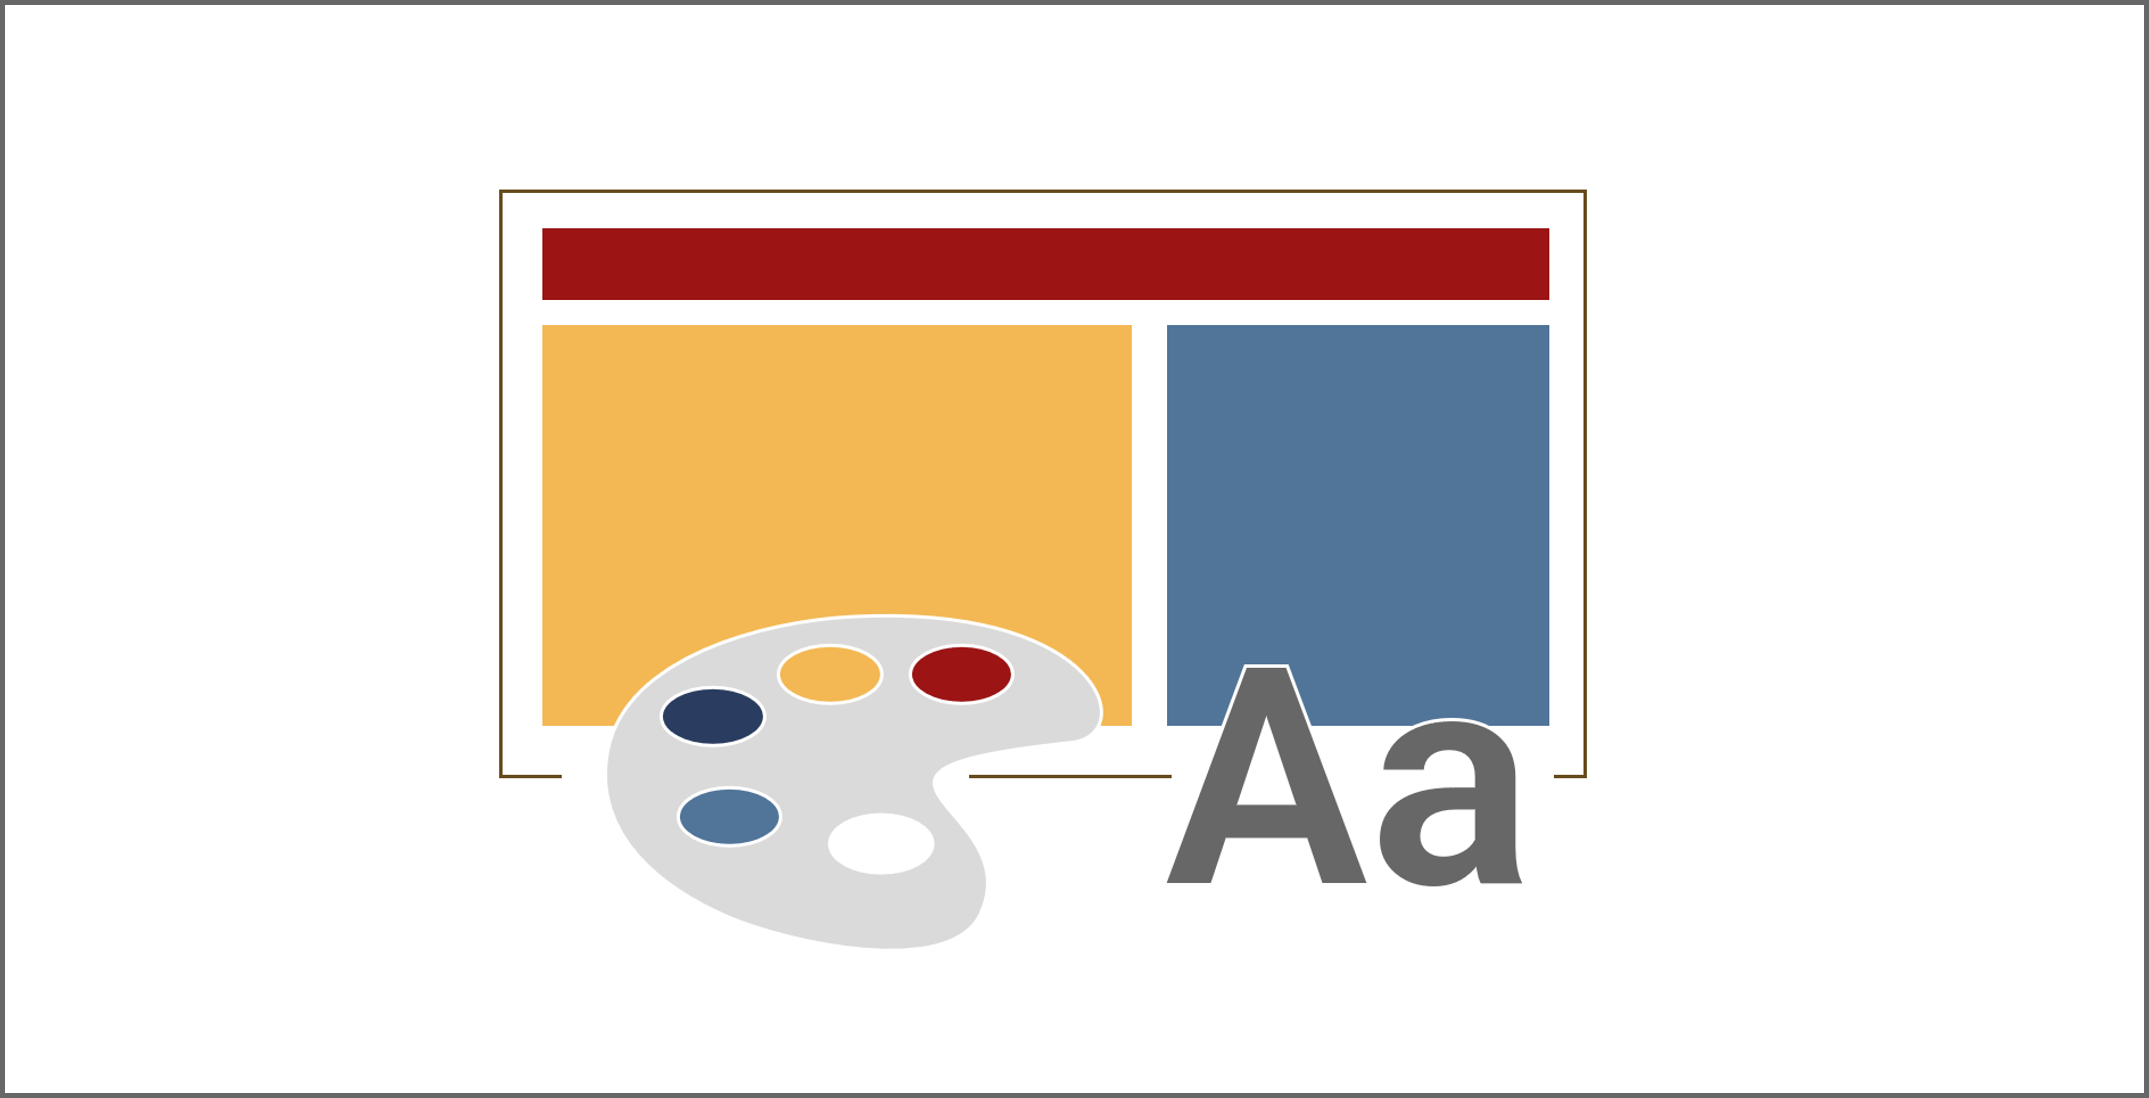 Grafik einer PowerPoint-Folie mit drei Platzhaltern in verschiedenen Farben, davor ist eine Malpalette sowie ein großes und ein kleines A platziert